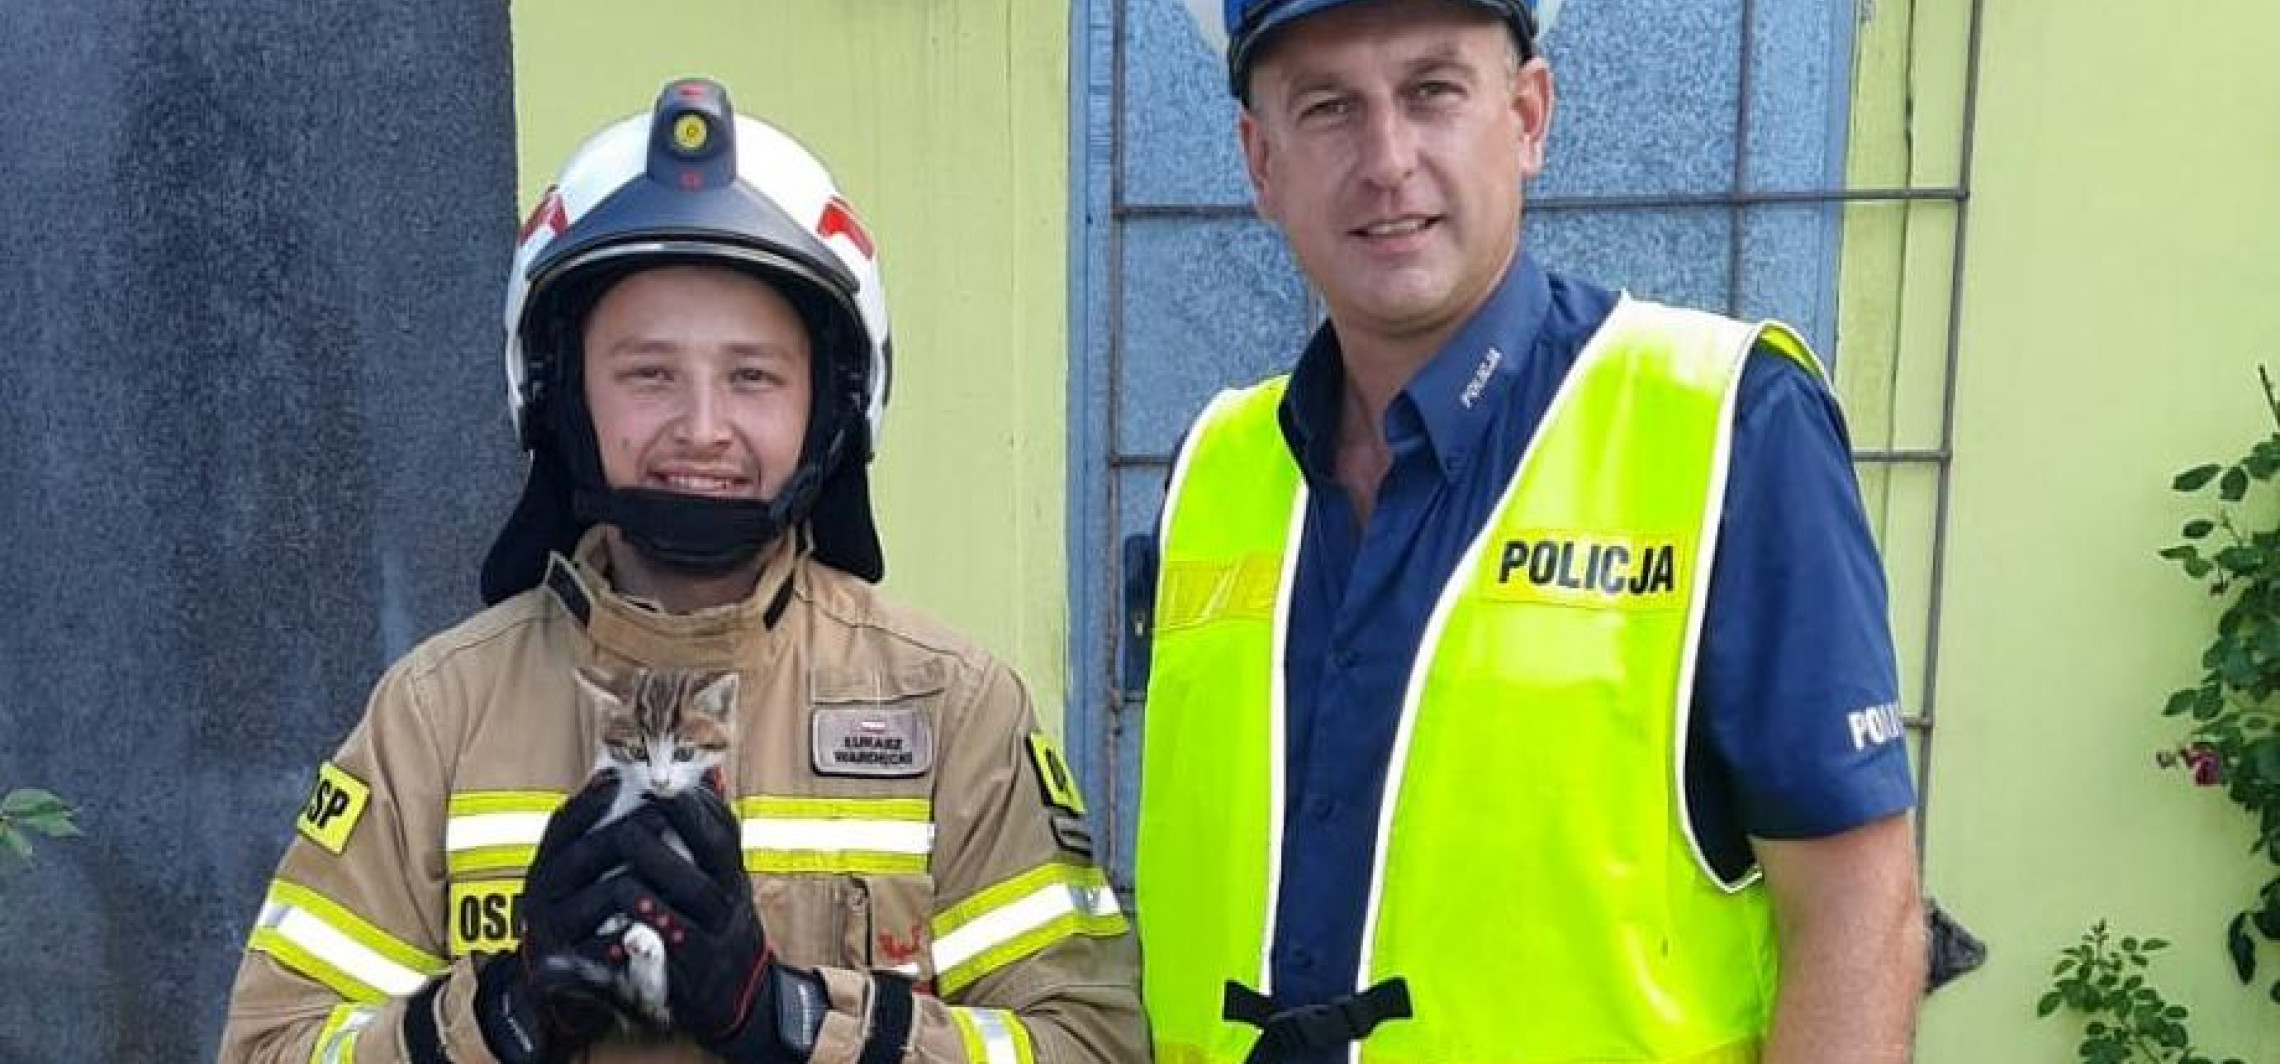 Region - Policjant uratował małego kota. Pomogli mu druhowie